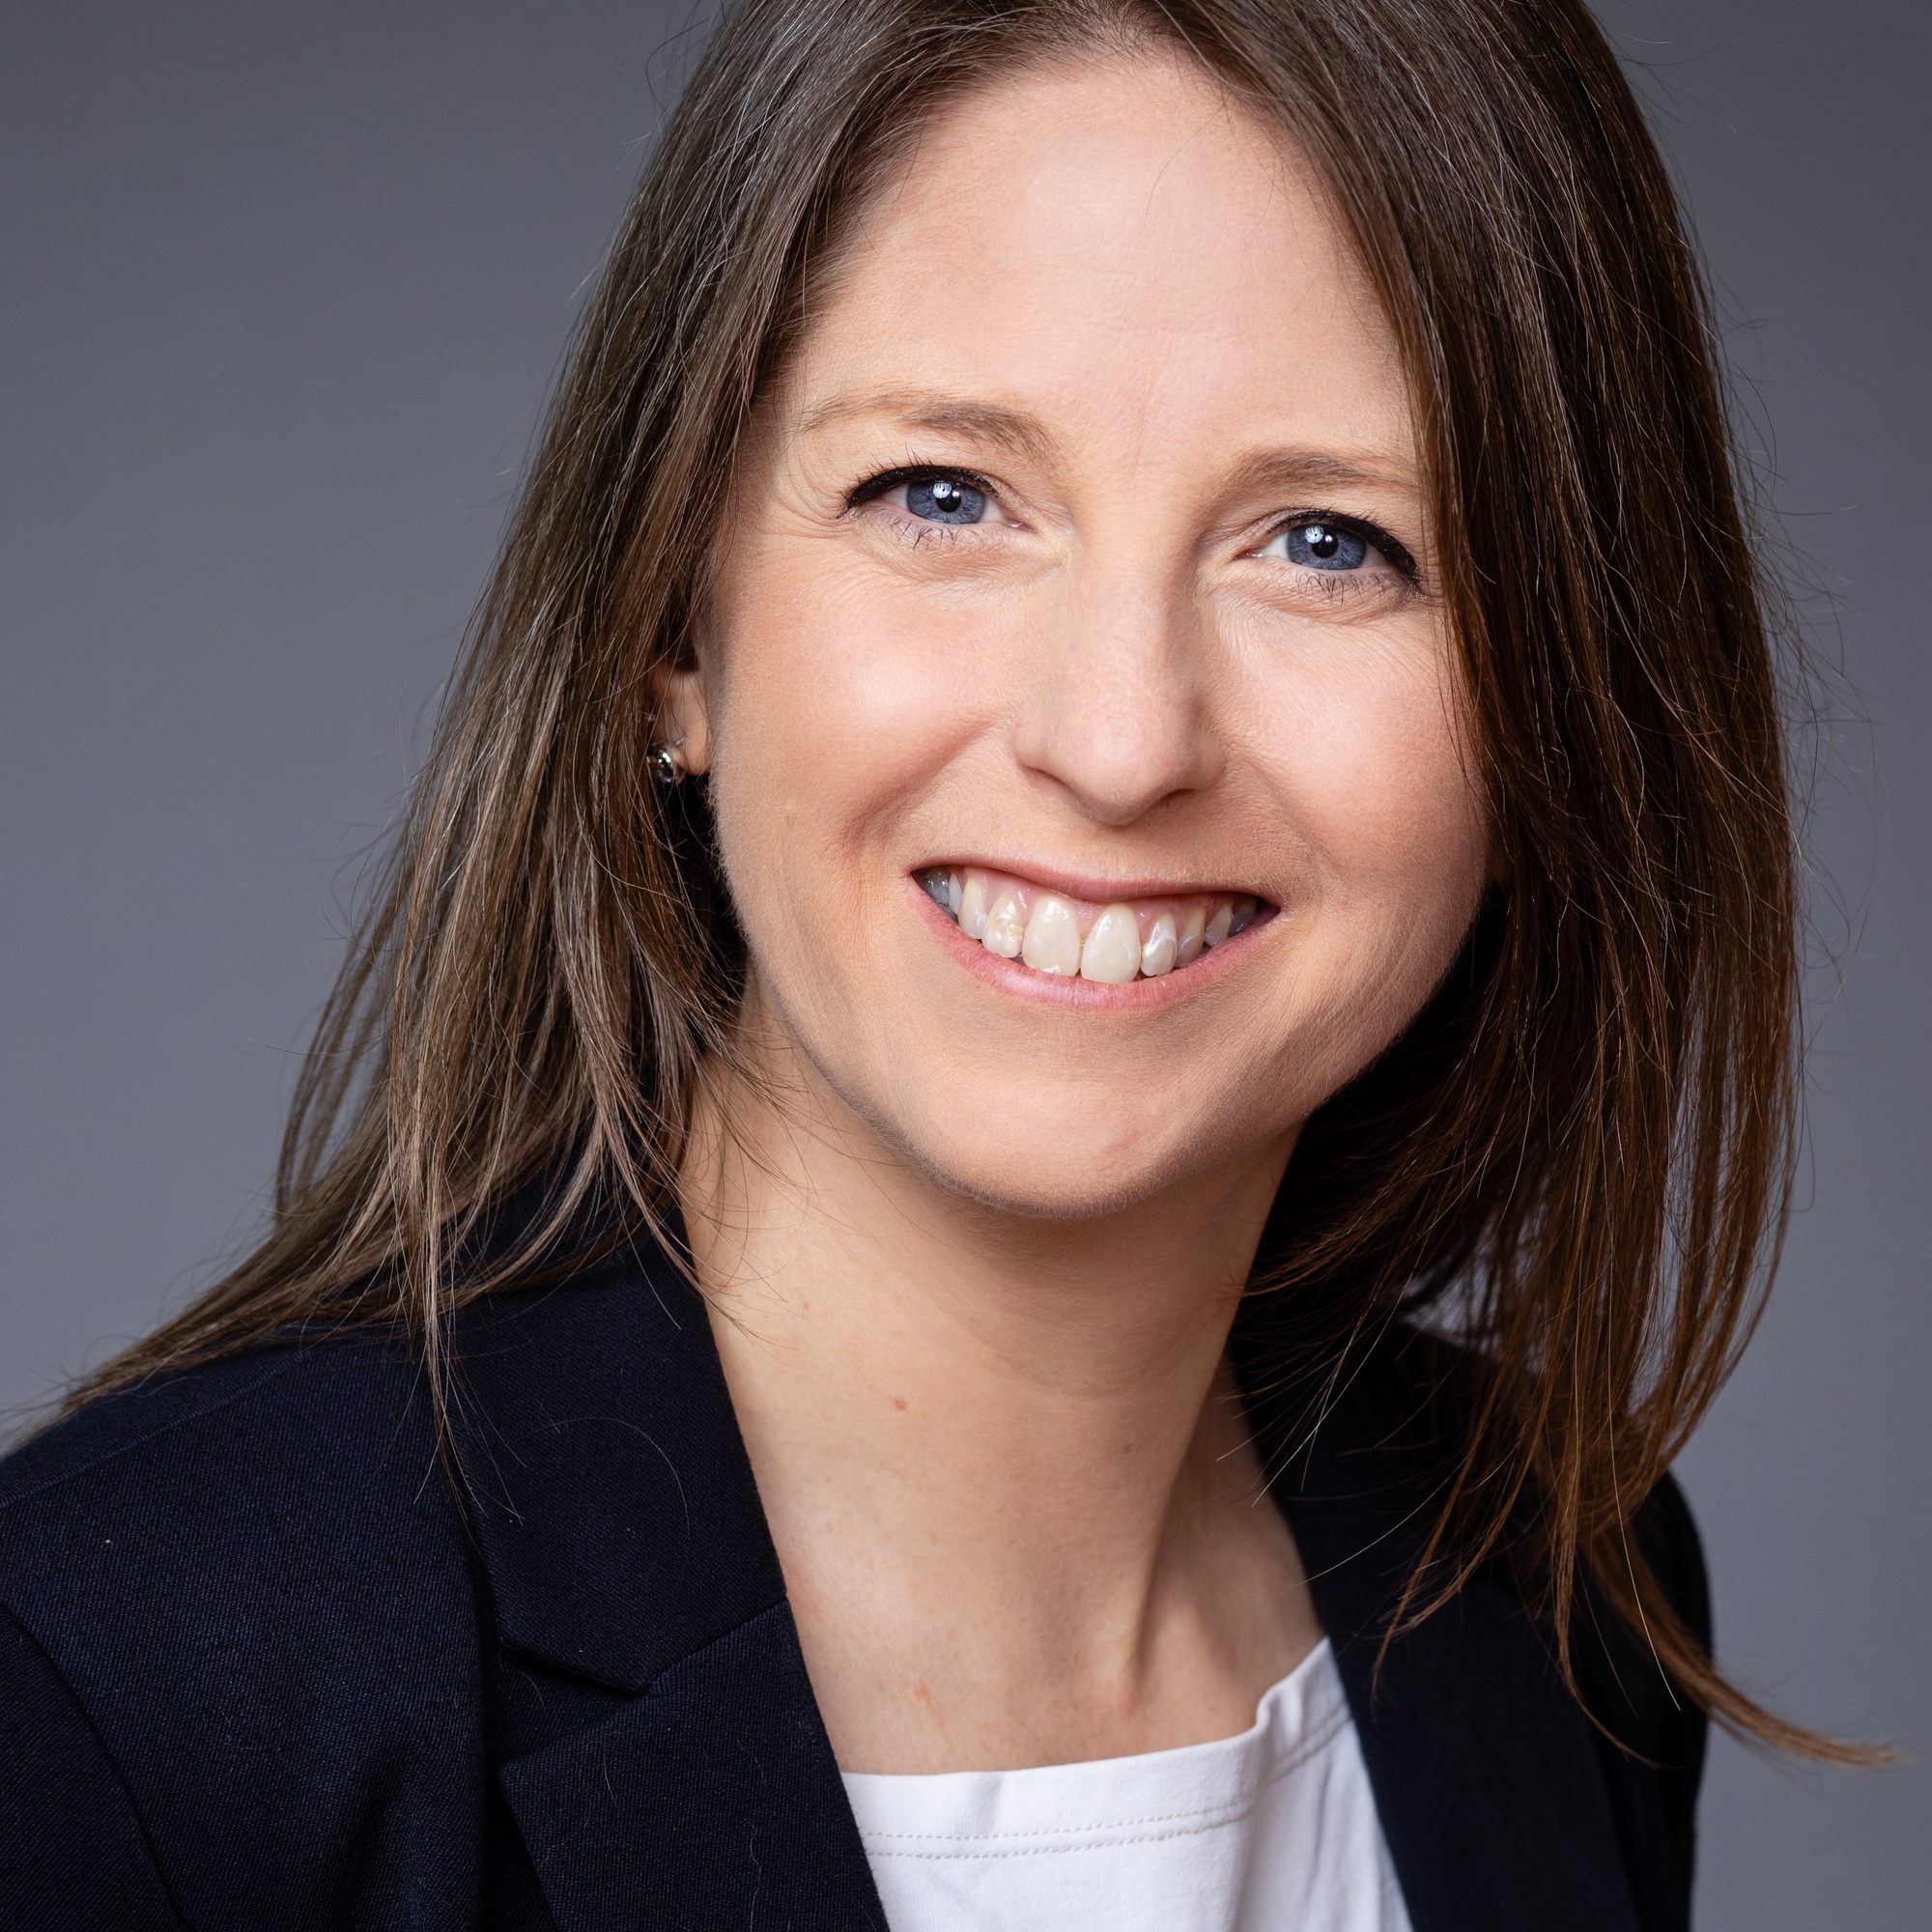 Helen Mannion, Global Data Director, Specsavers